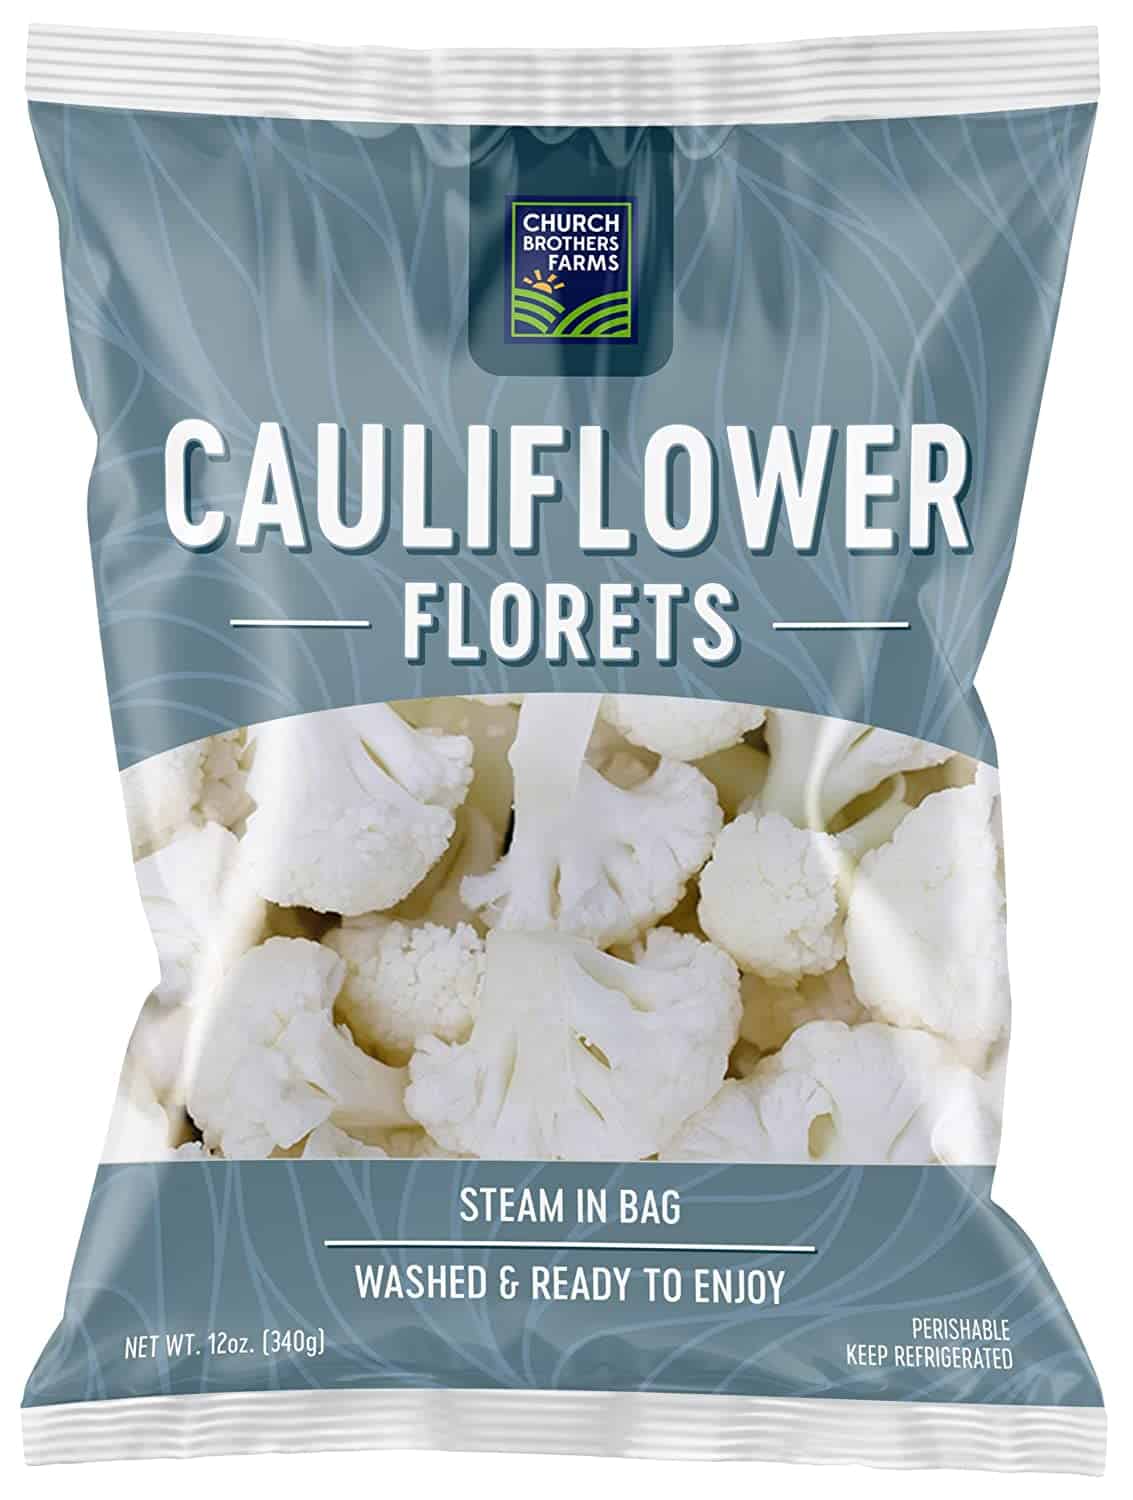 Cauliflower florets e le sebaka sa linaoa tse ntšo